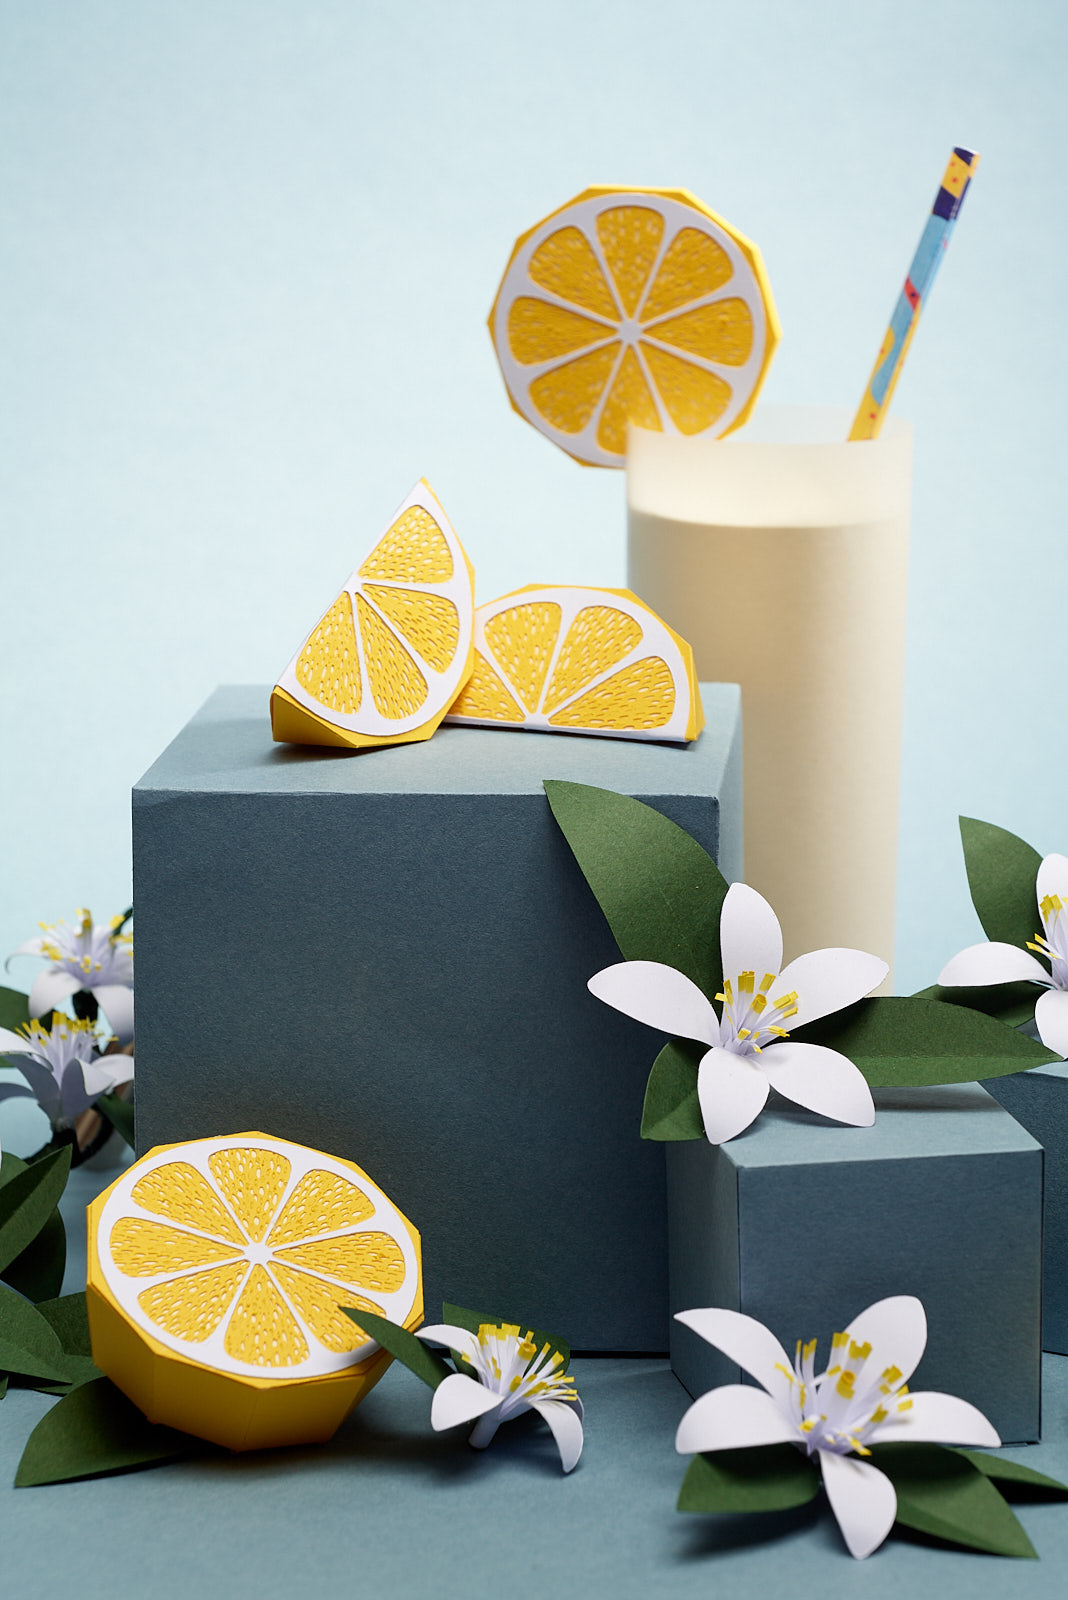 IMPRESSION ORIGINALE citronnade et fleurs de citronnier en paper art sur fond bleu